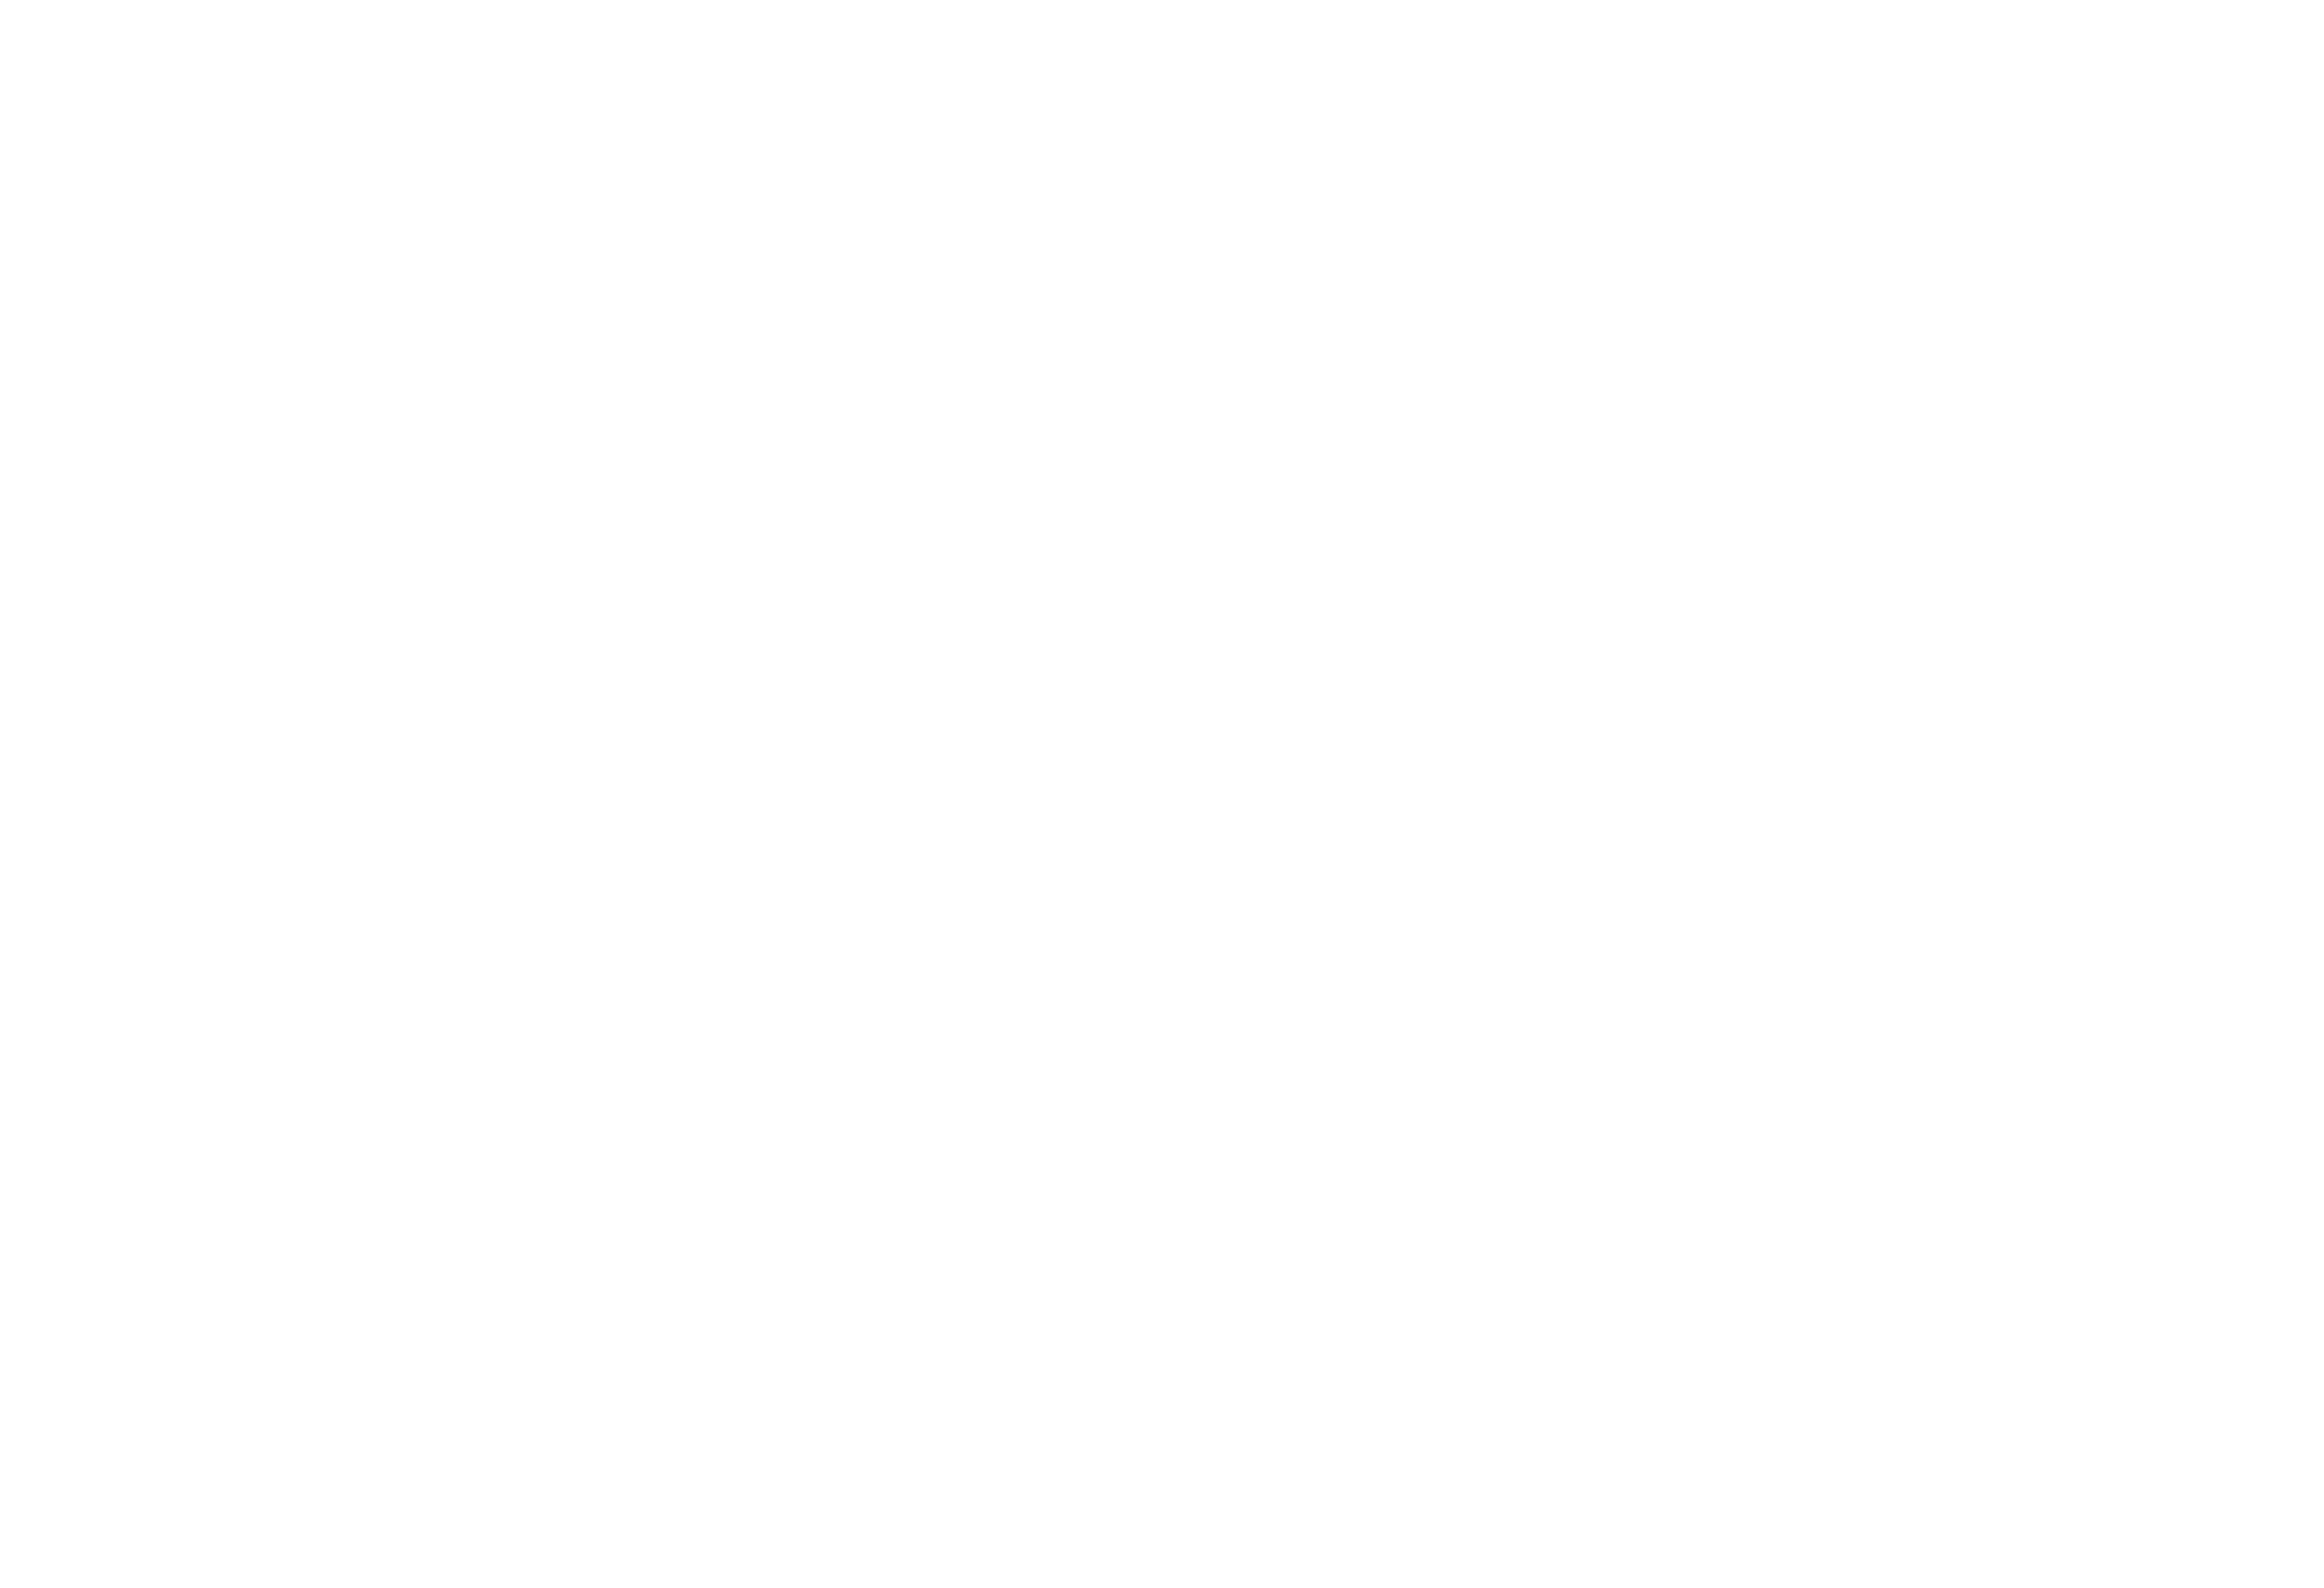 Madawaska Tastee Freez